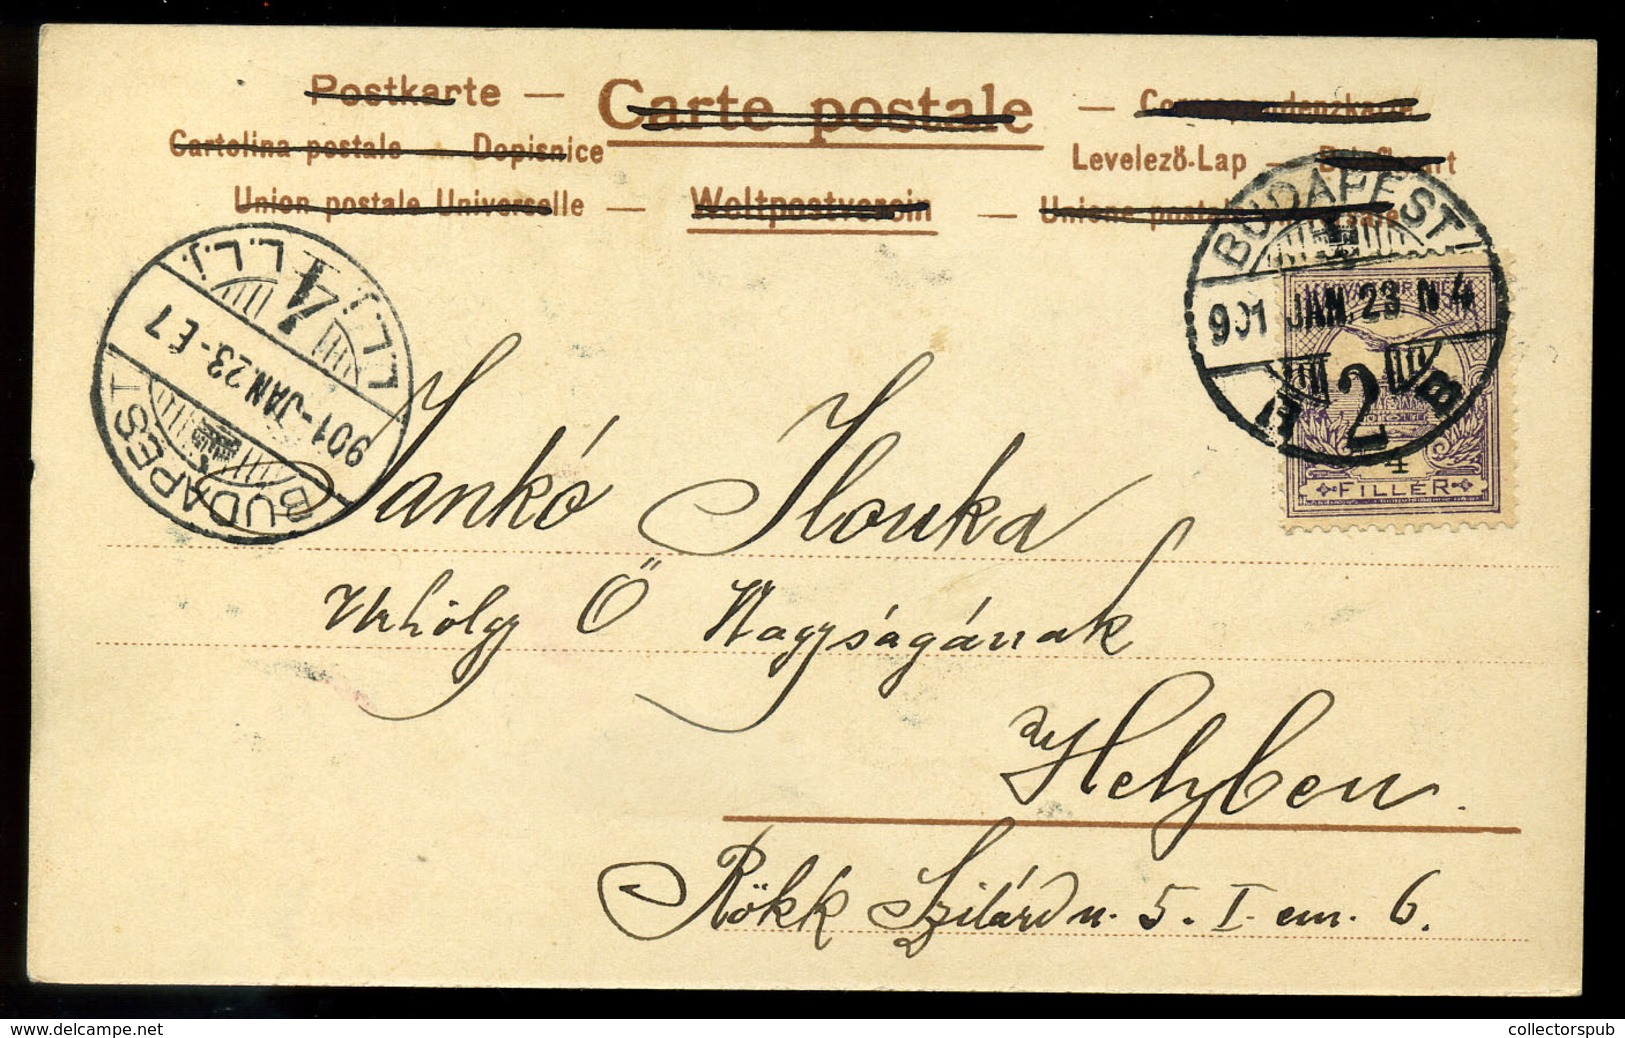 Szecessziós Litho Képeslap  1901.  /  Secession Litho Vintage Pic. P.card 1901 - Hungary